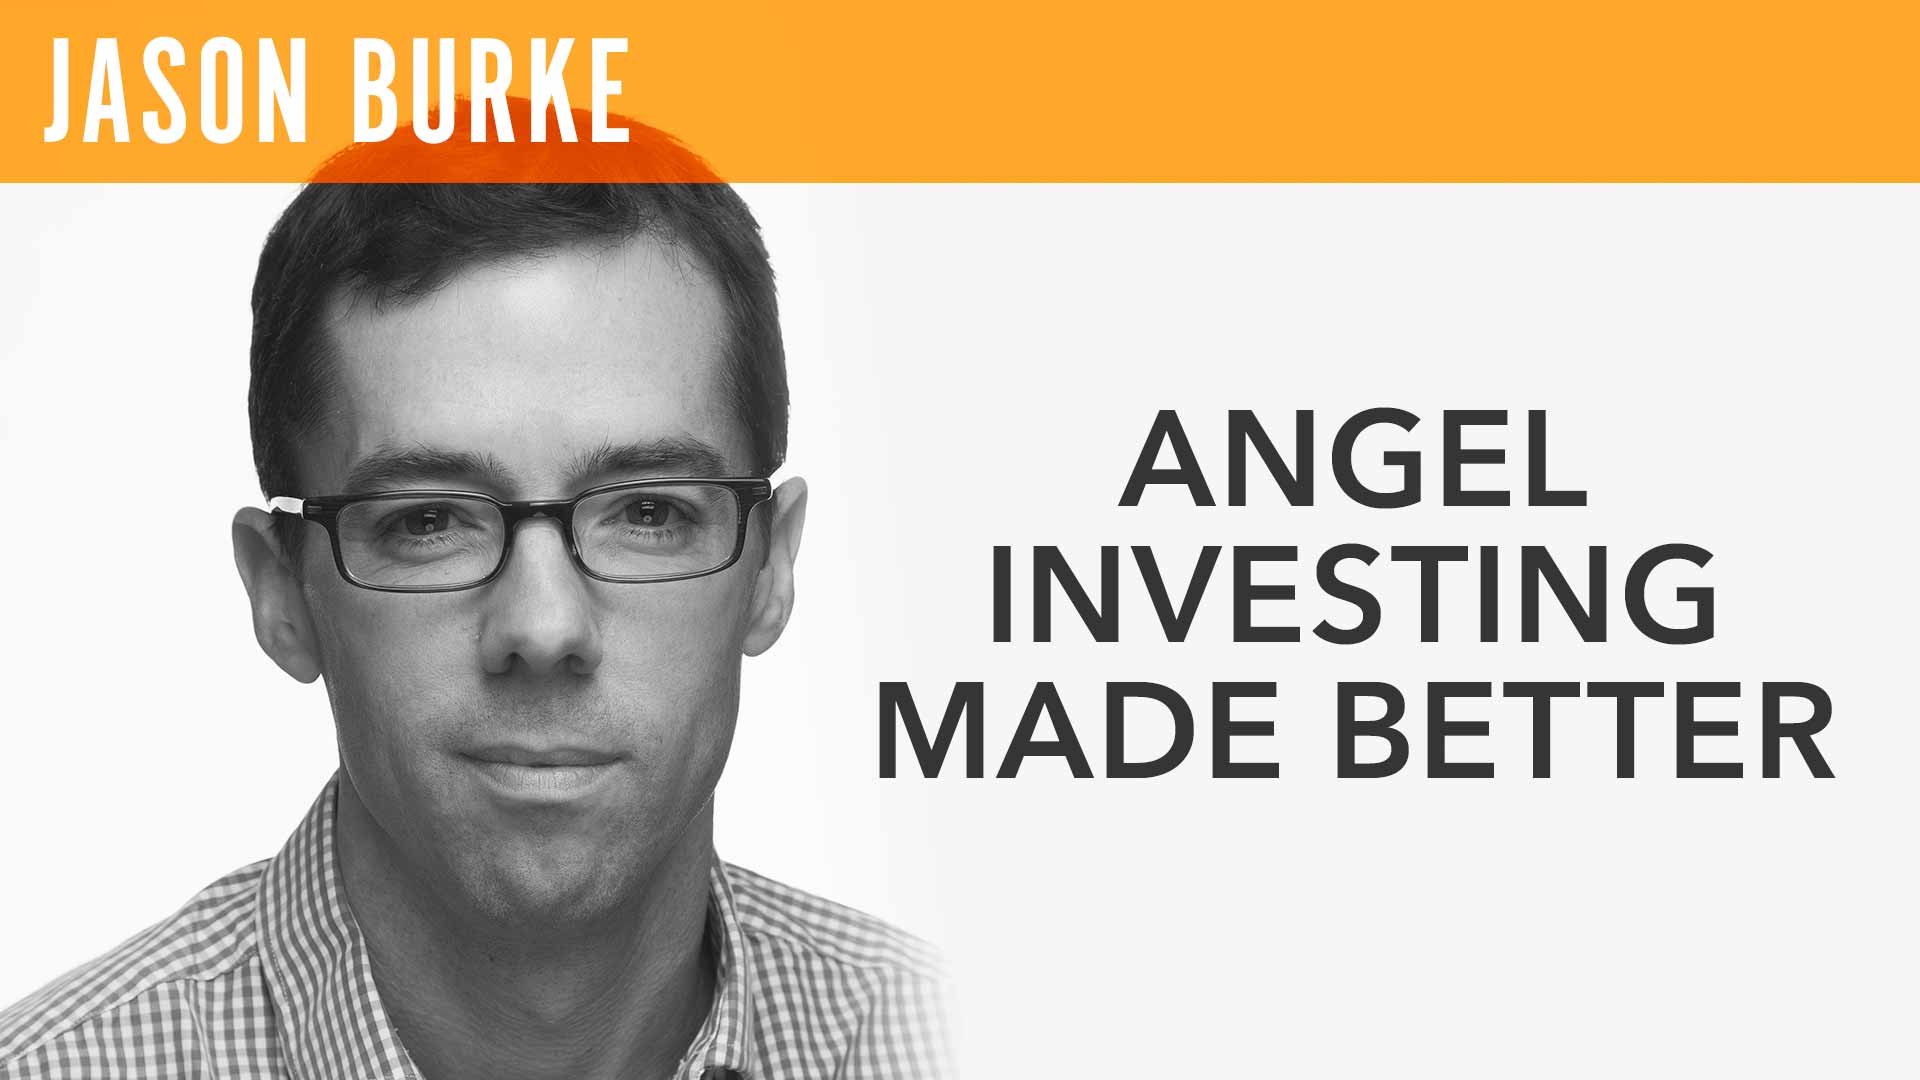 Jason Burke, "Angel Investing Made Better"